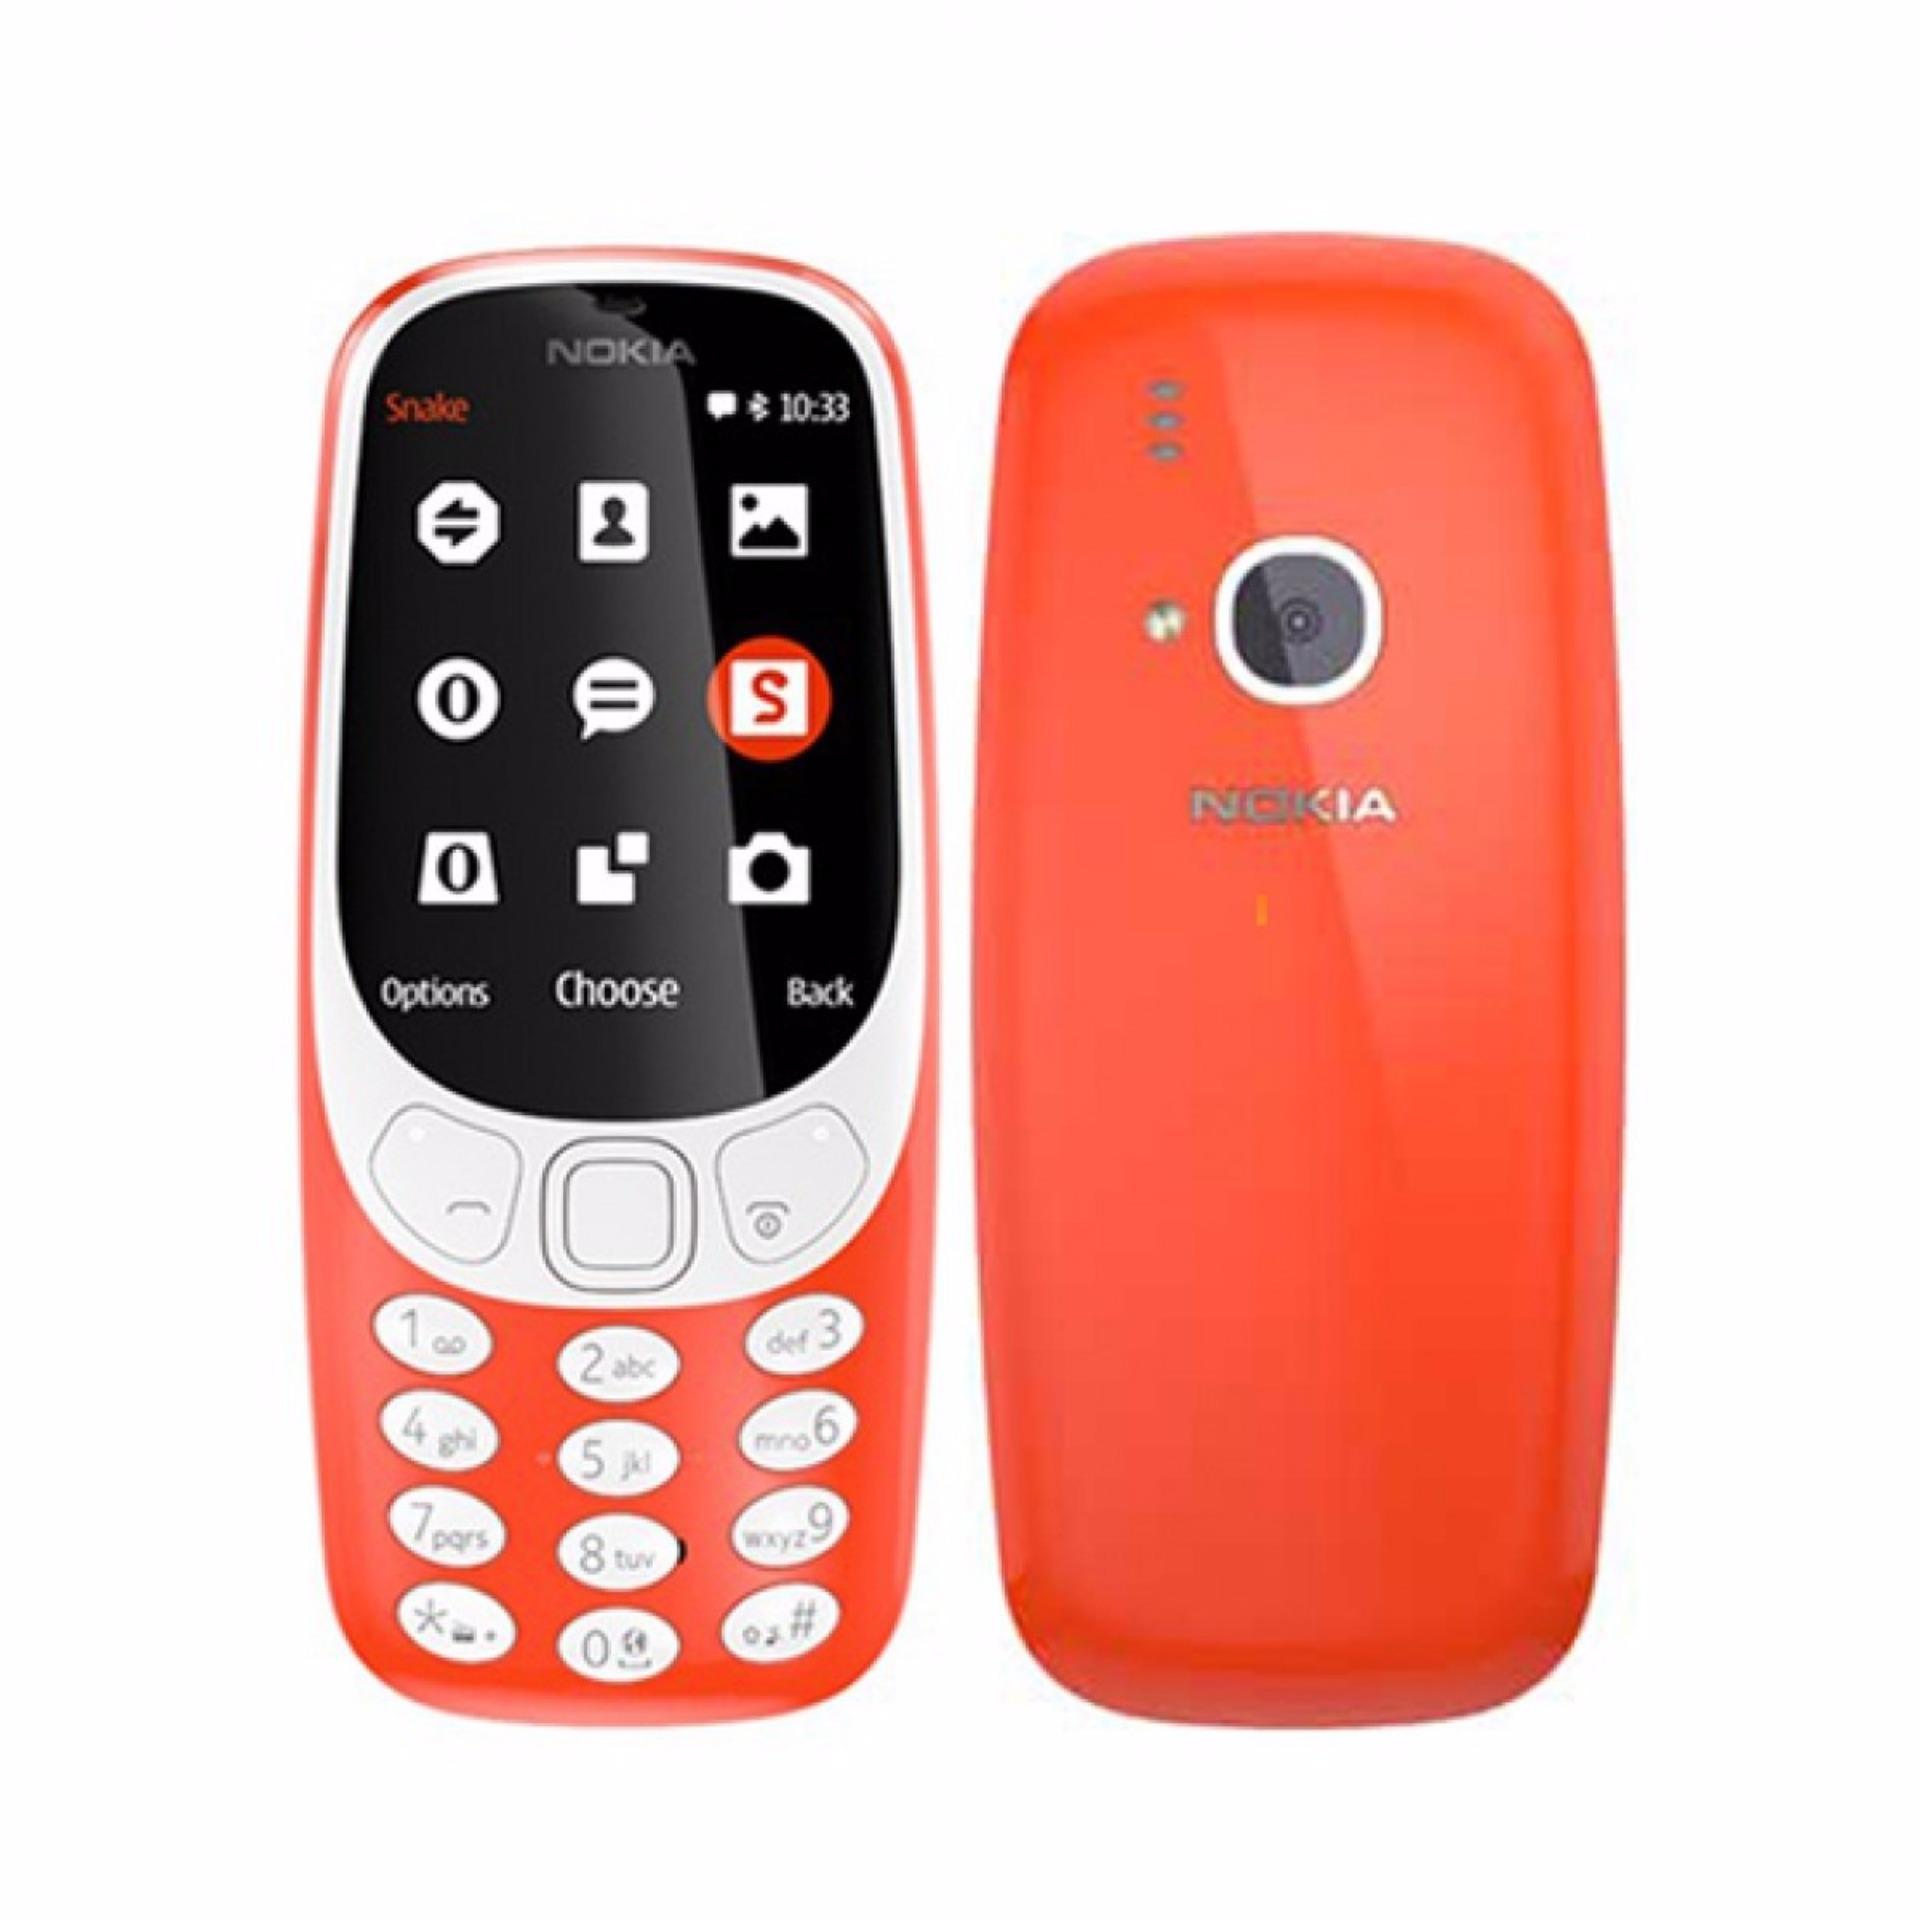 Nokia 3310 (Local Set with 1 Yr Warranty)